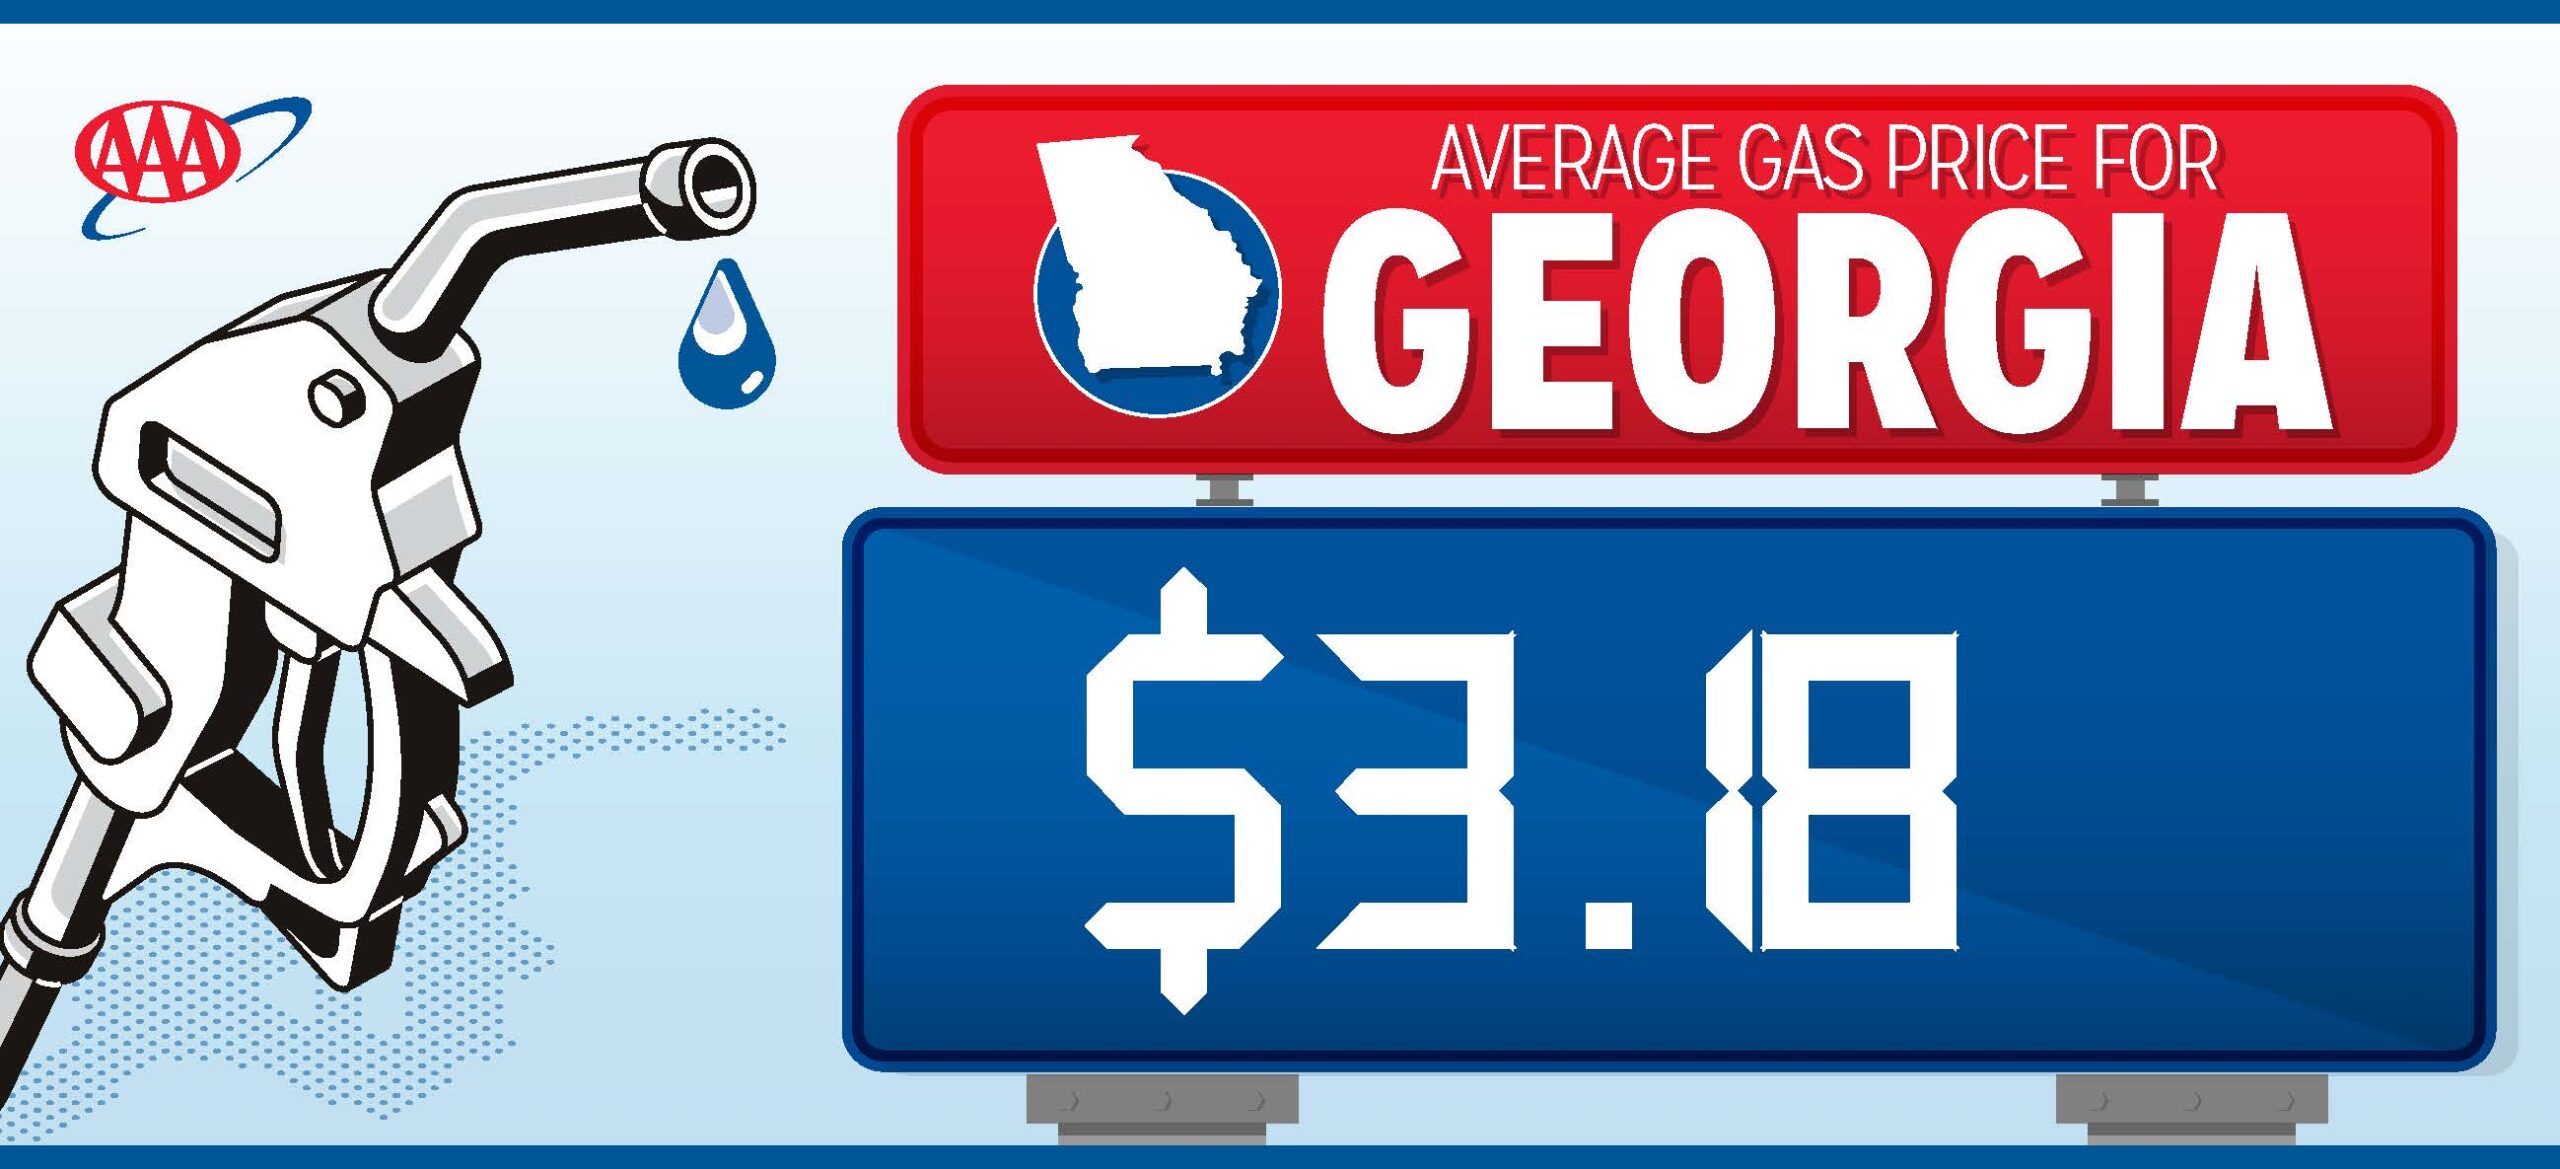  Precios de la gasolina en Georgia bajan 4 centavos